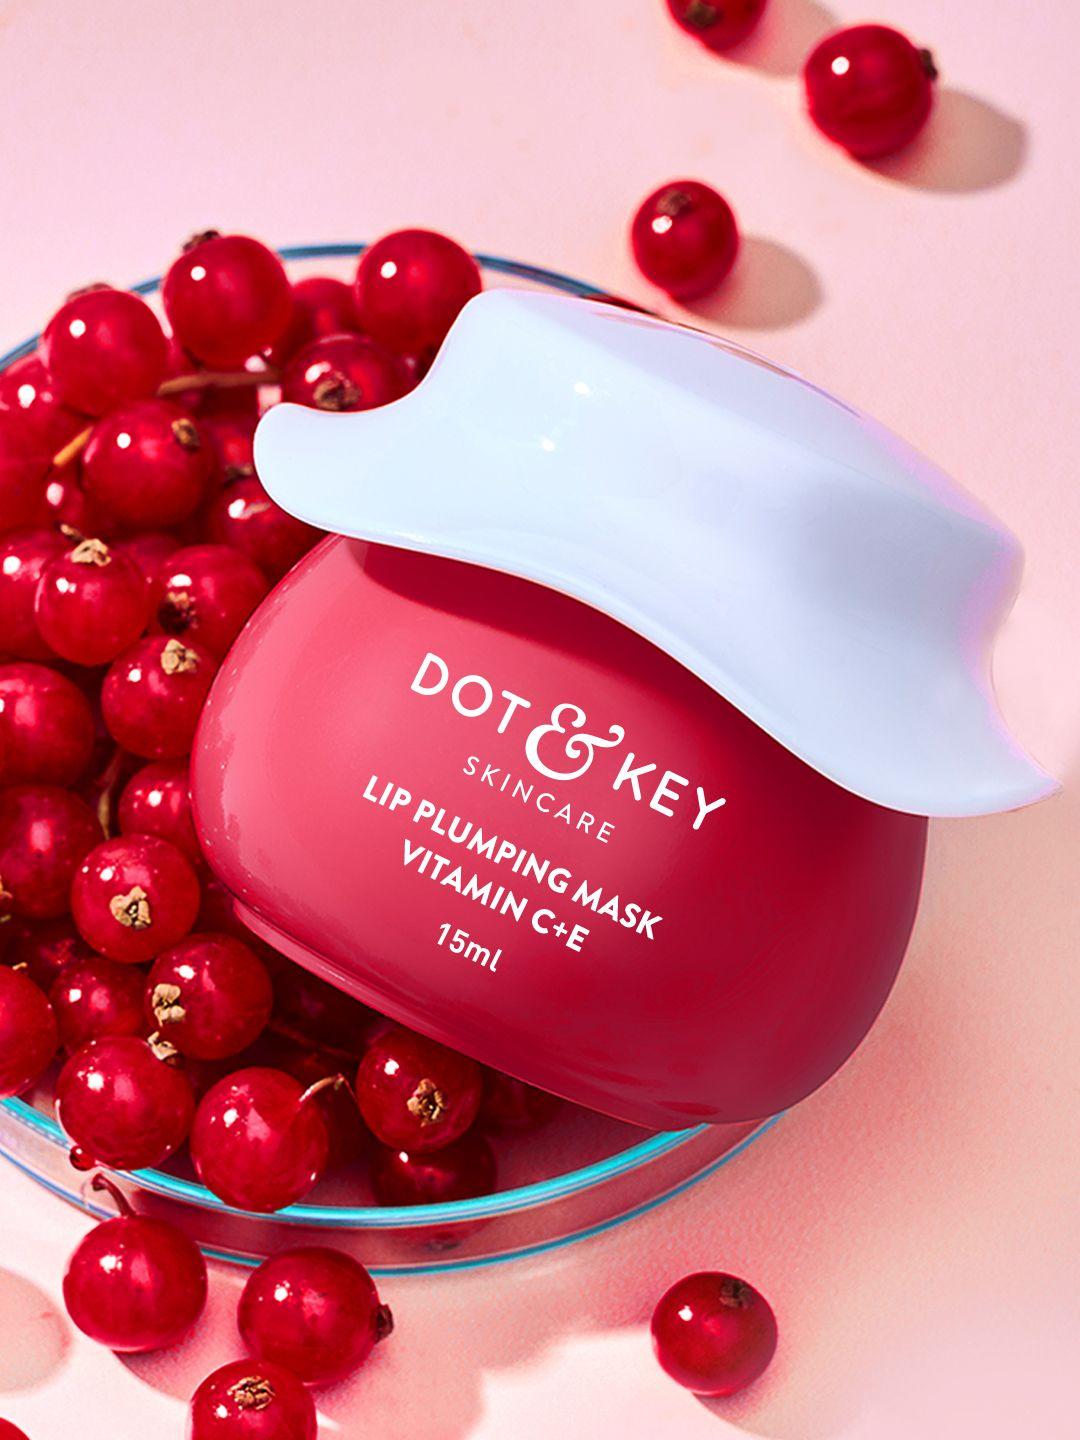 dot & key vitamin c+e flushed red lip plumping mask-lingonberry, turmeric oil - 15ml